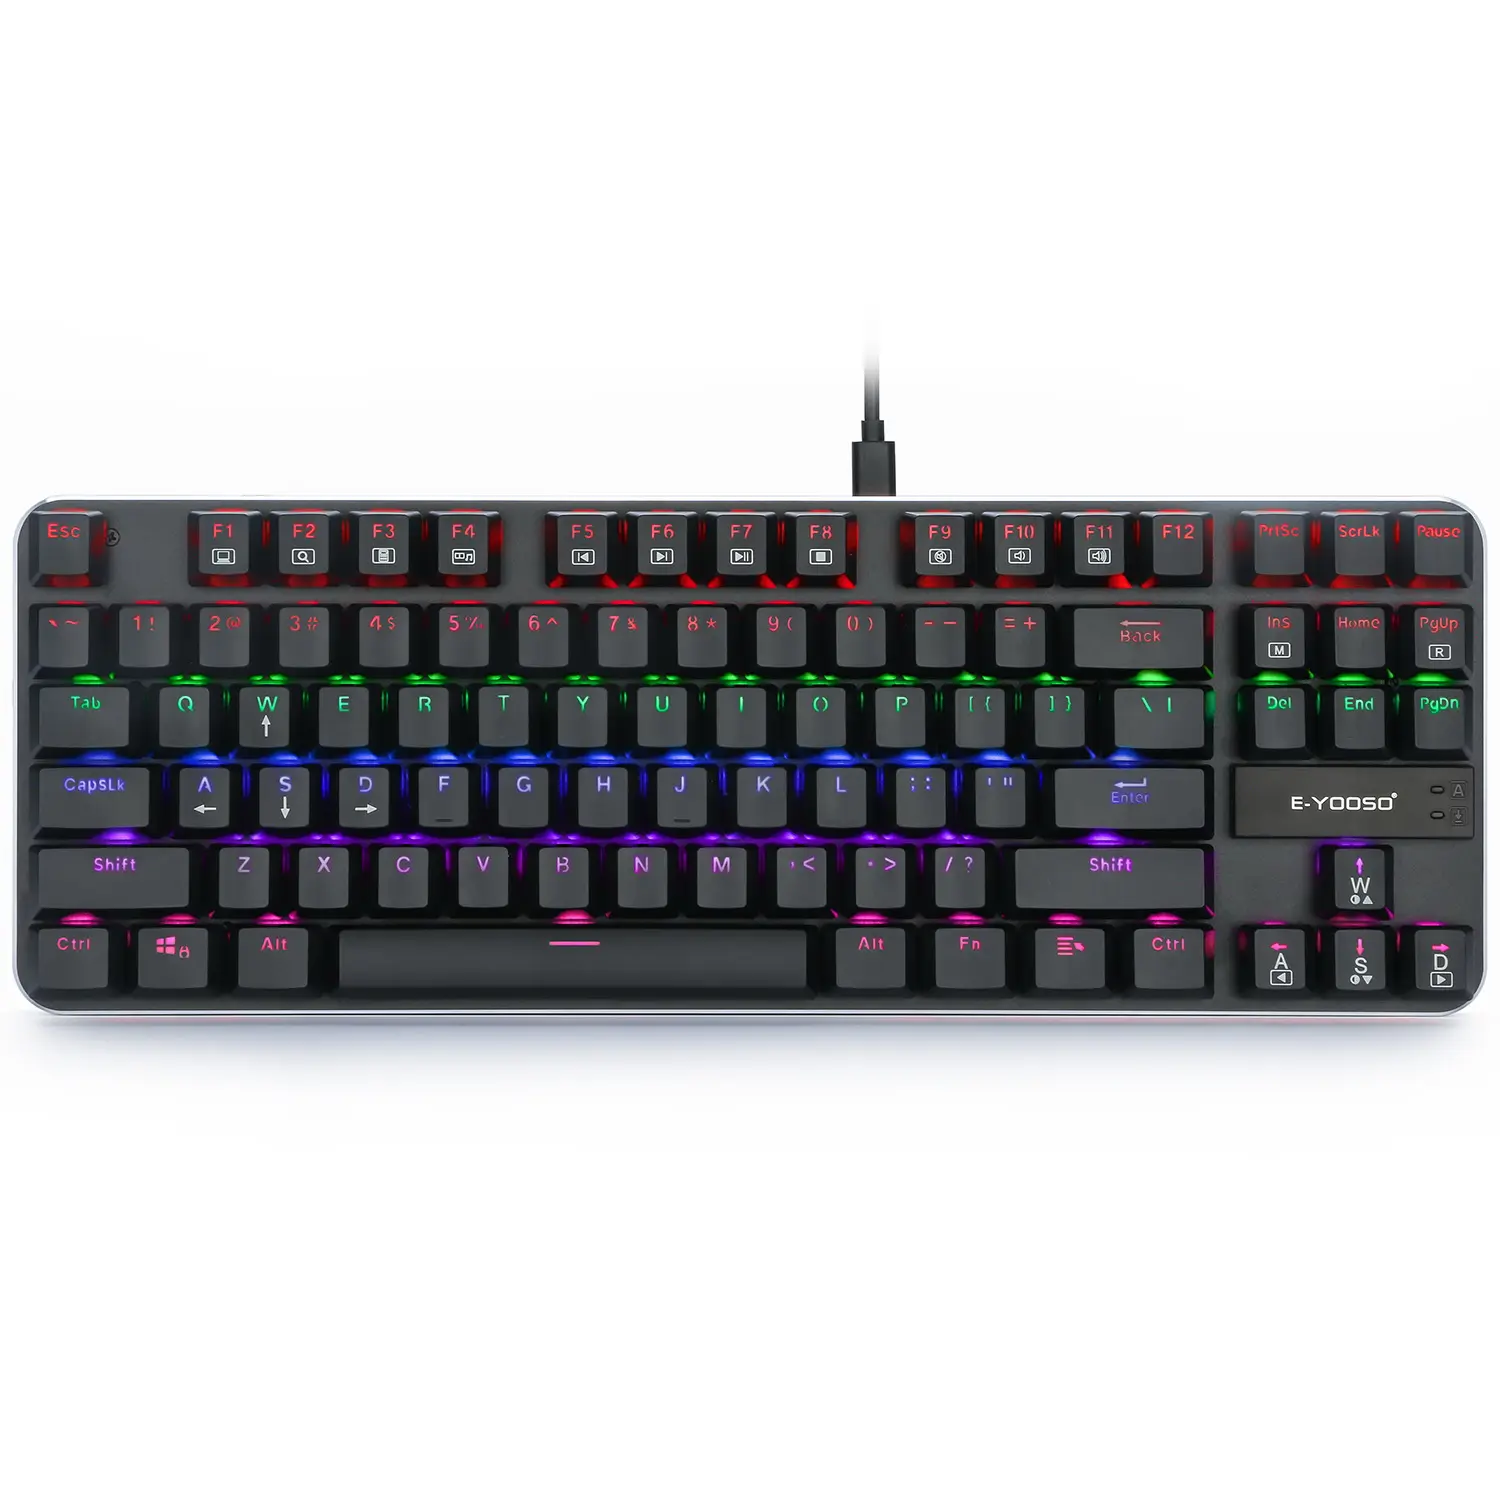 Preiswerter E-yooso K630 Gaming-Tastatur 87 Tasten RGB Blacklight mechanische Tastatur mit Tauswechseln Typ C